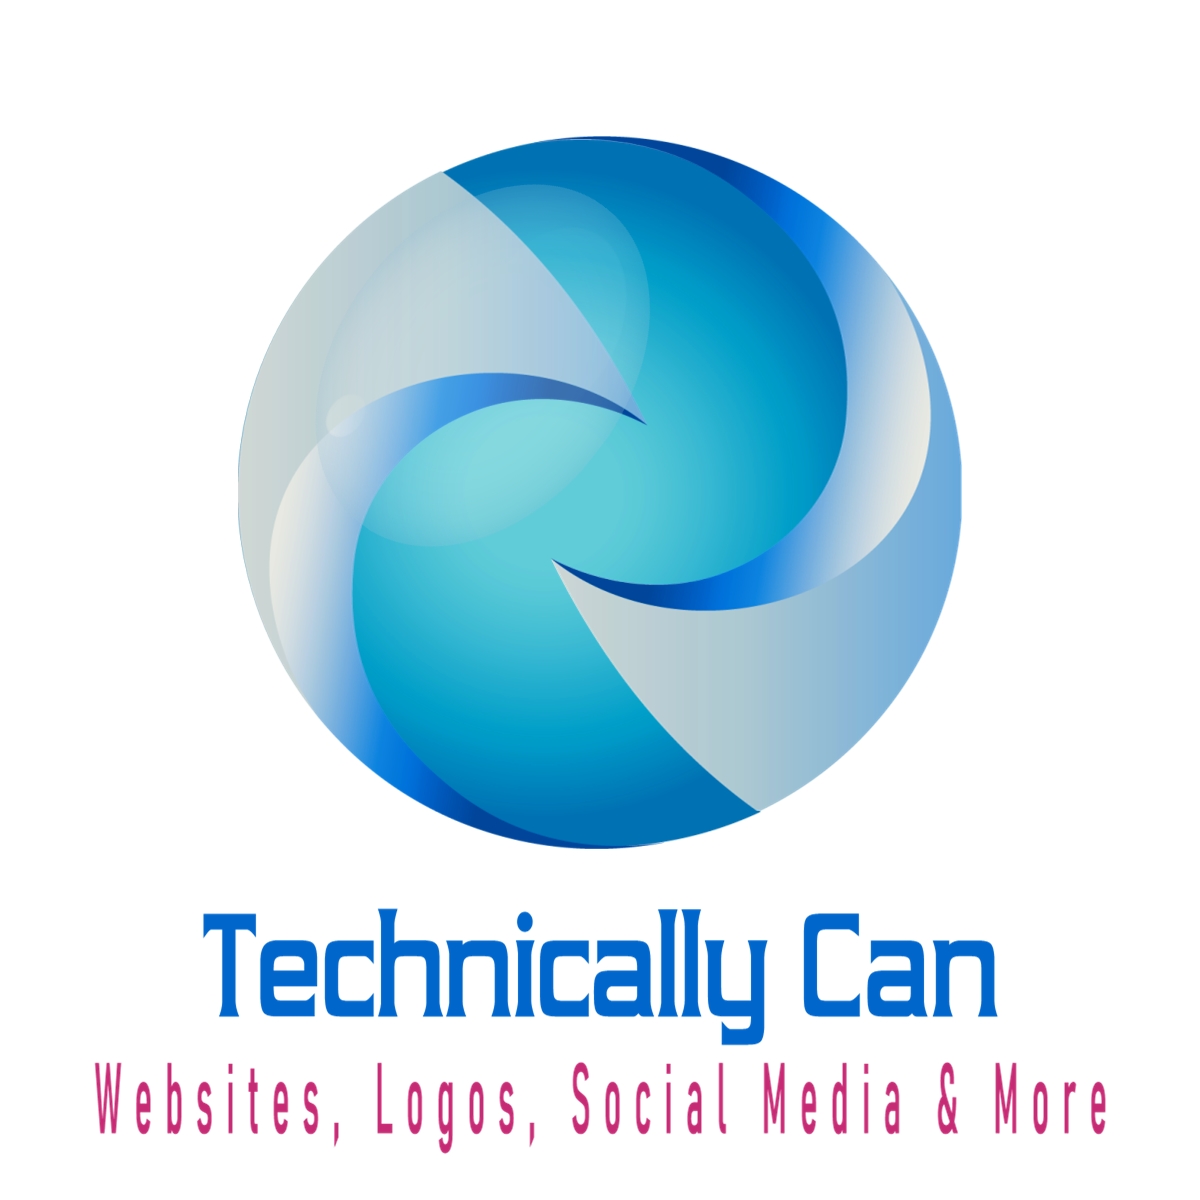 Websites, Logos, Social Media